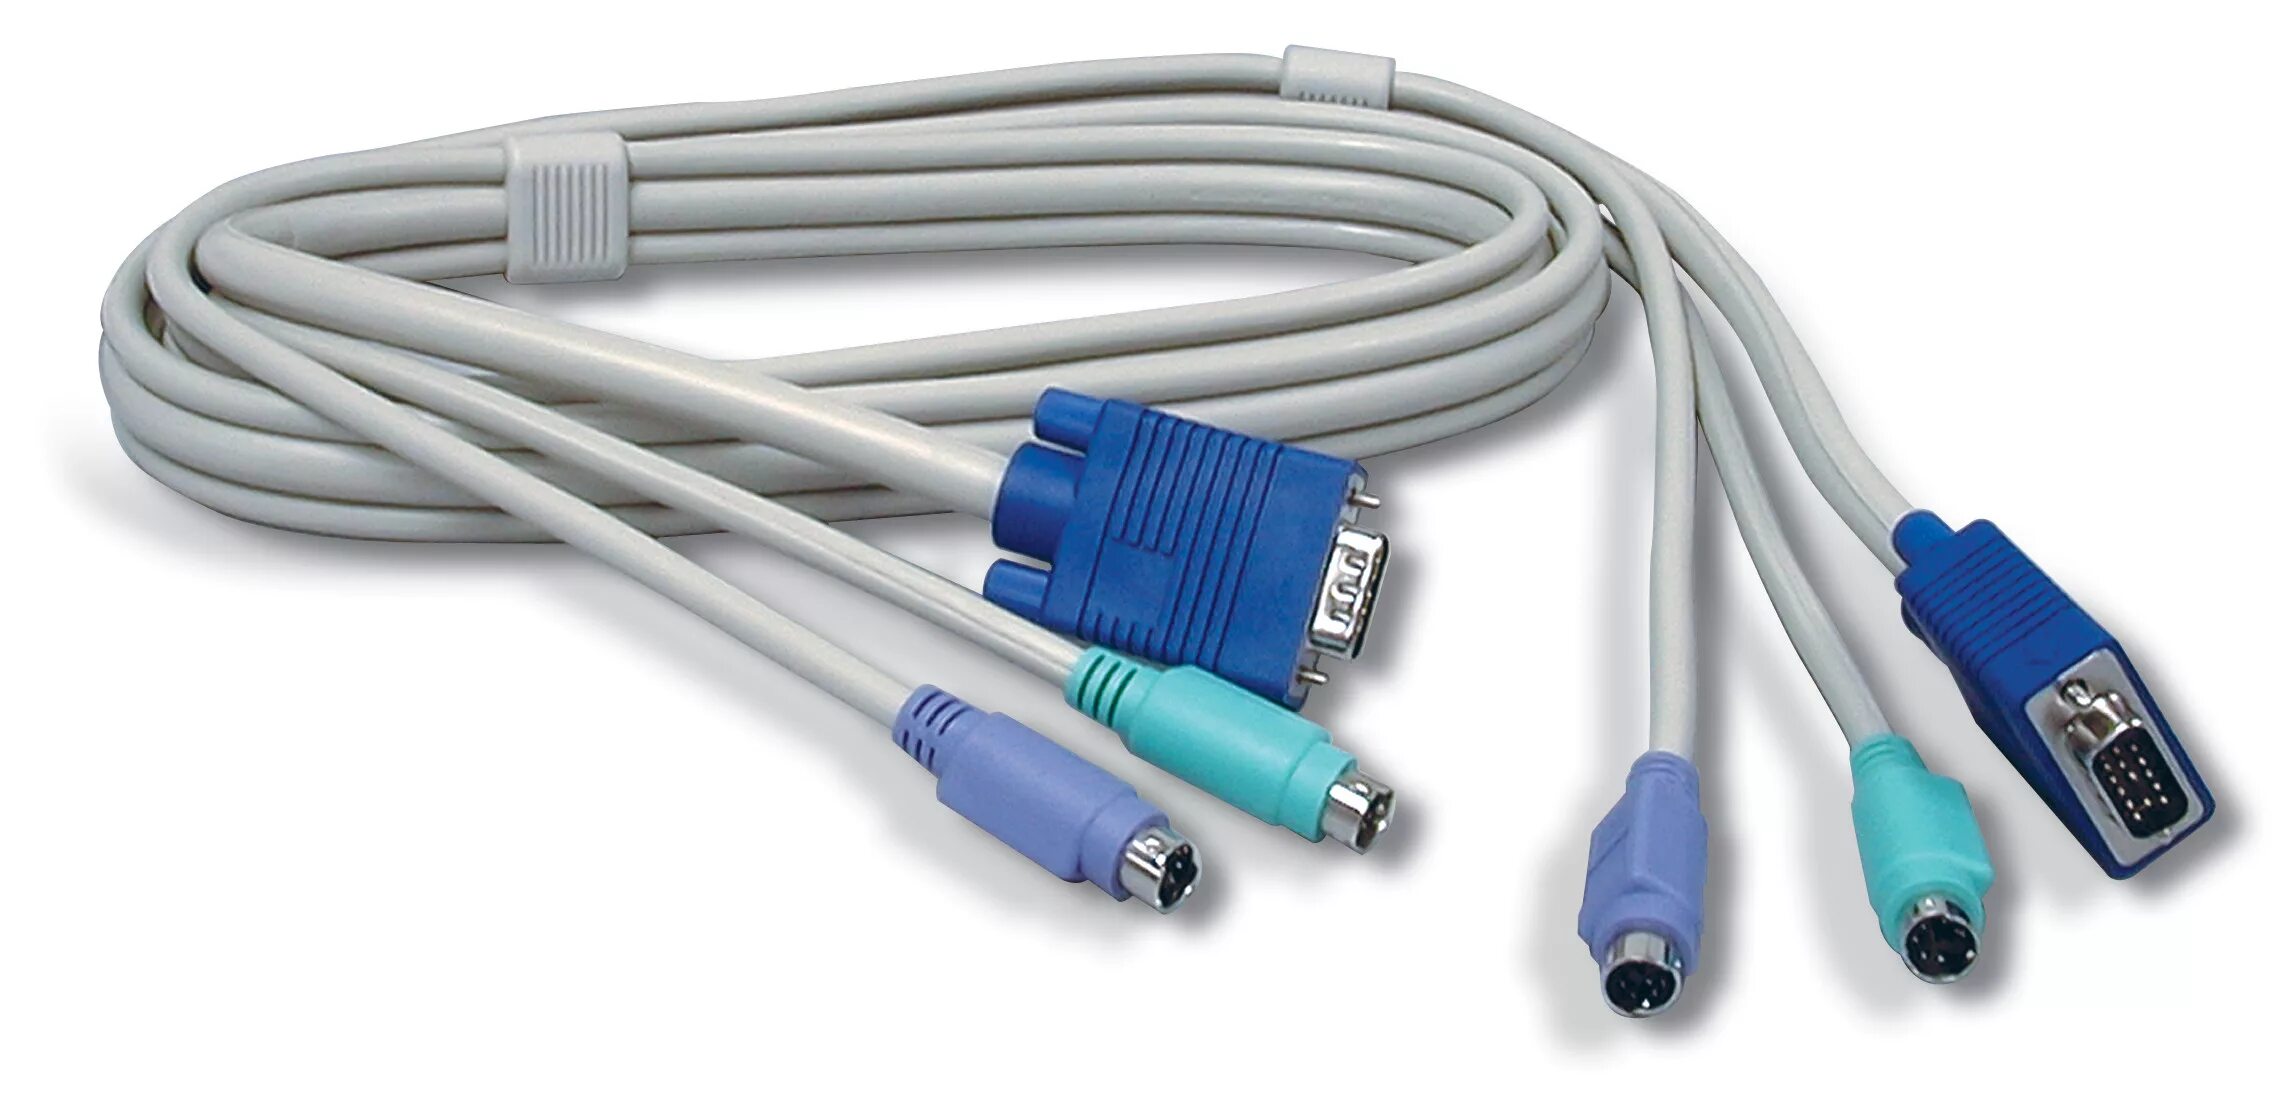 Кабель pc 2. Кабель для квм TRENDNET tk-c06 1.8 метра (2 x PS/2 + SVGA). Кабель TRENDNET (tk-c10). TRENDNET tk-c06 кабель для KVM переключателей (PS/2+PS/2+vga15m, 1.8м). KVM Cable PS/2 - 1.8M.